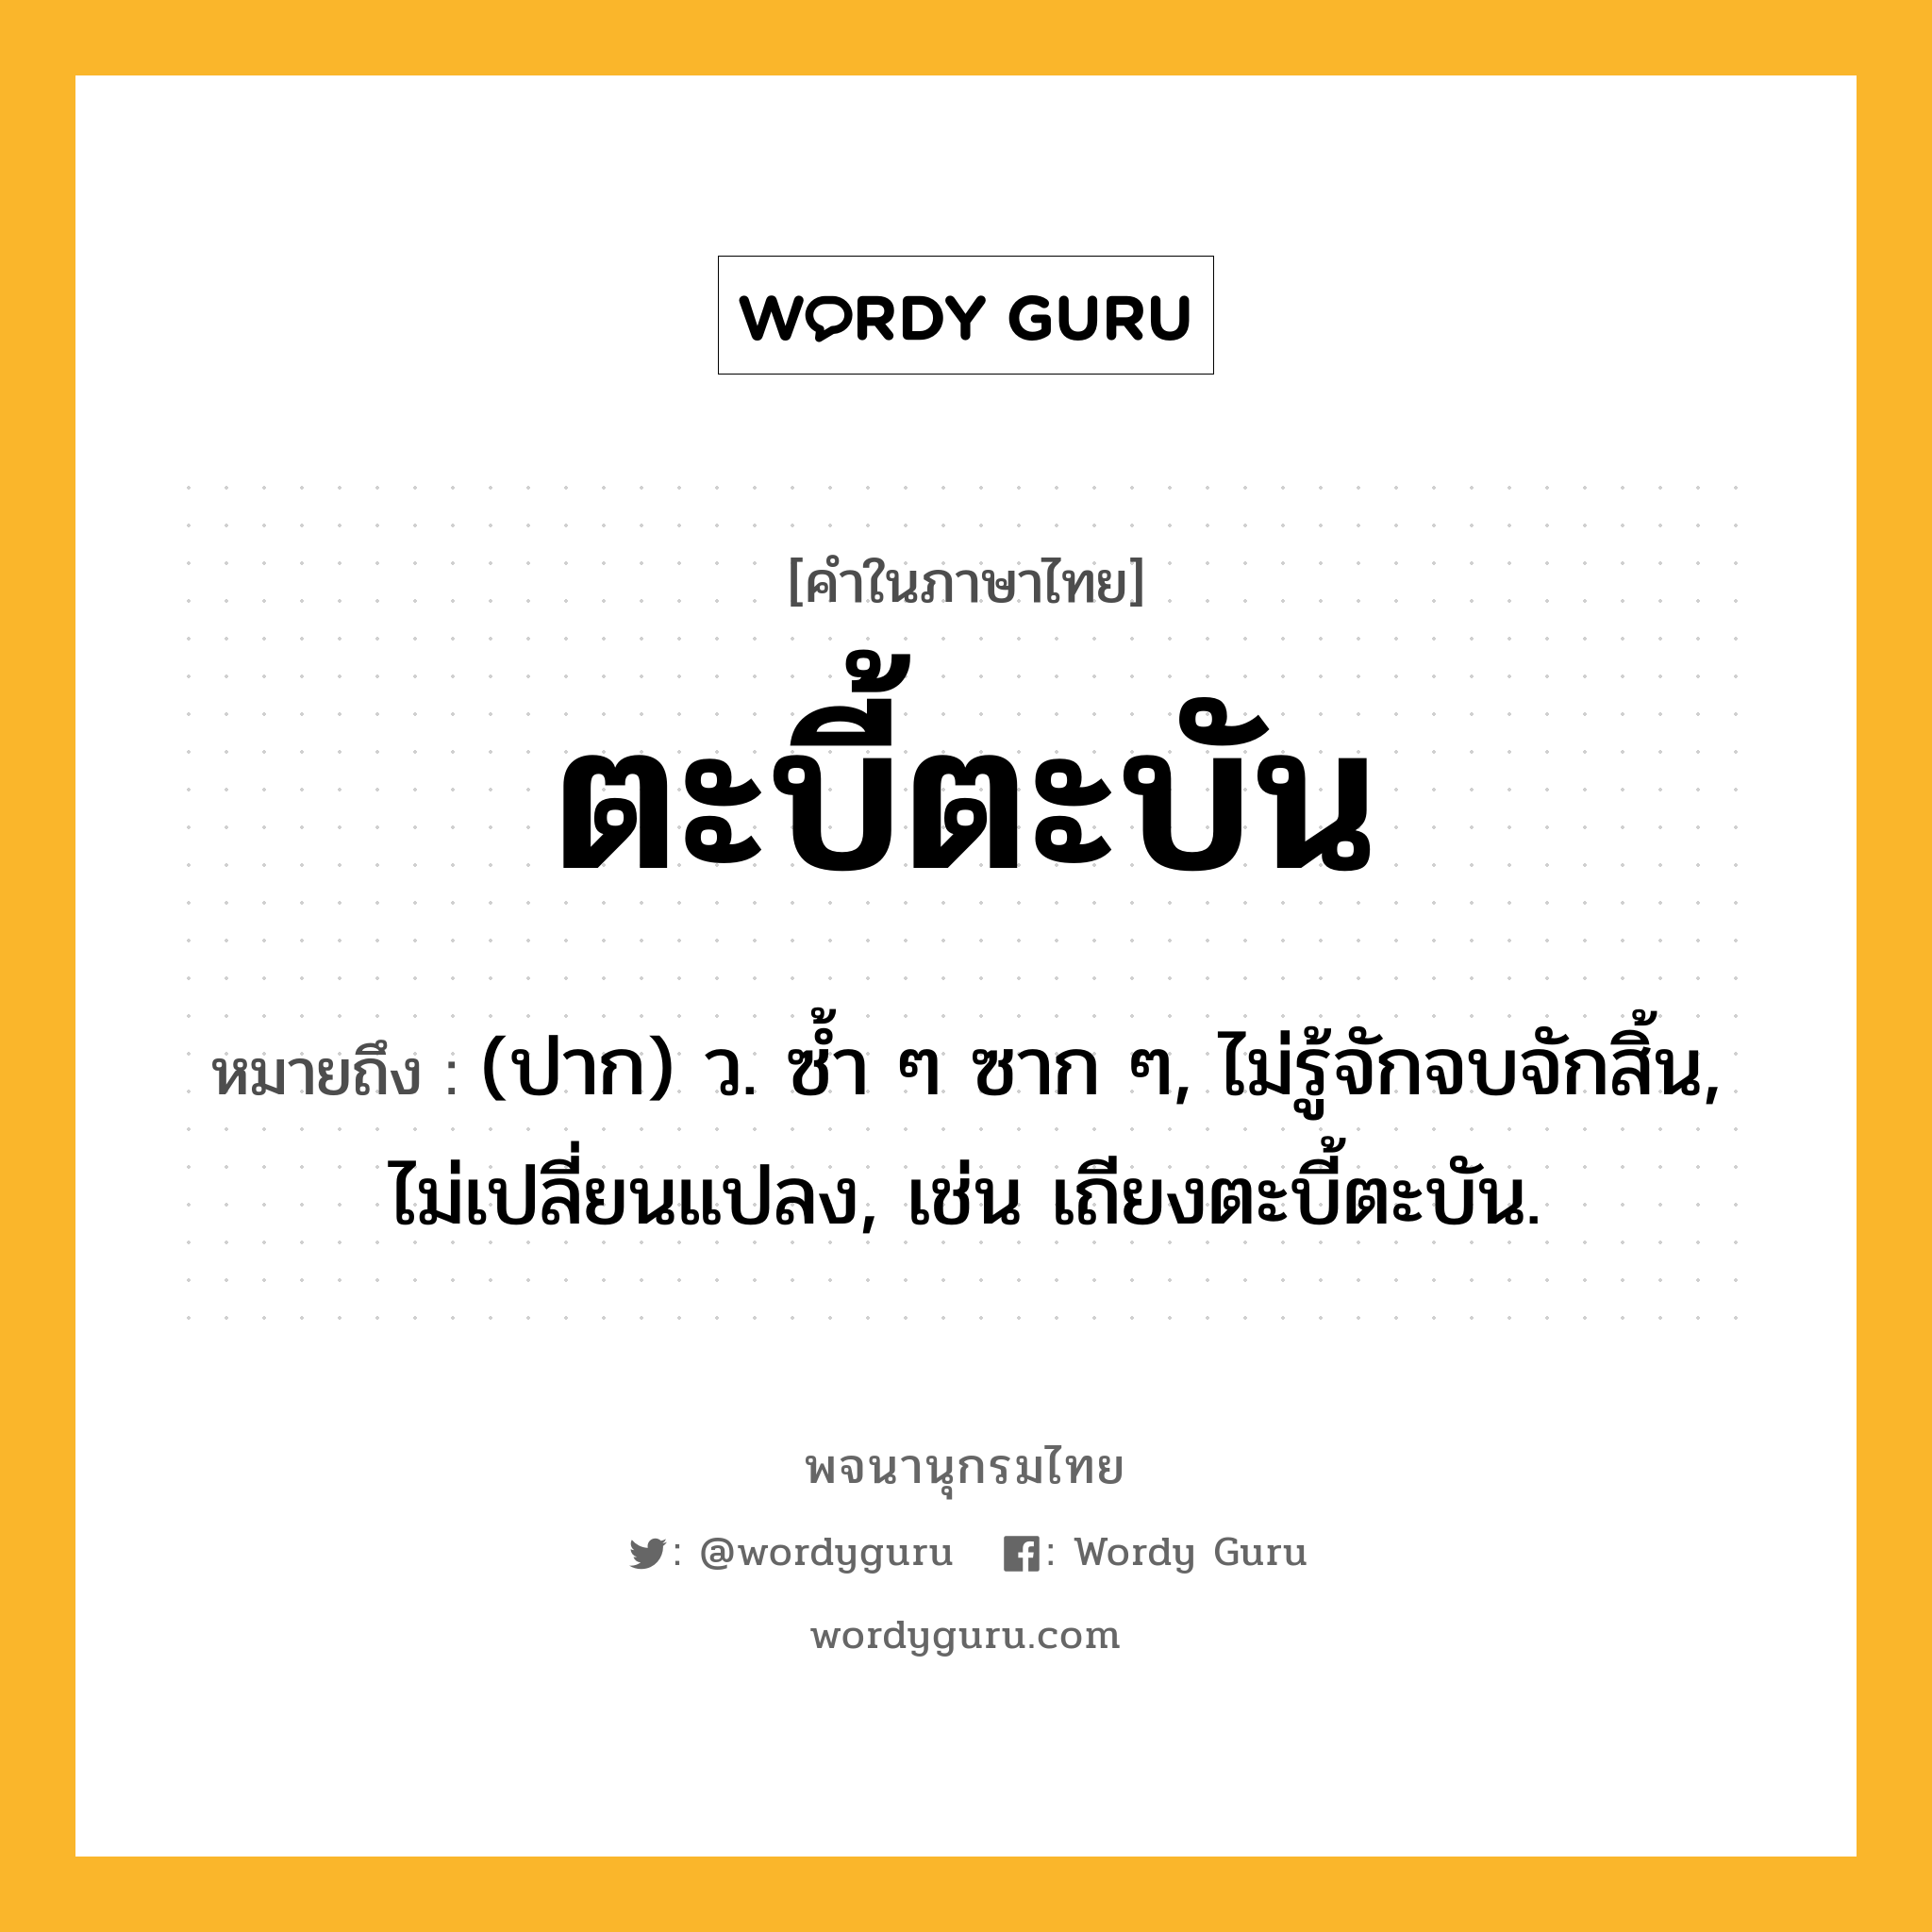 ตะบี้ตะบัน หมายถึงอะไร?, คำในภาษาไทย ตะบี้ตะบัน หมายถึง (ปาก) ว. ซํ้า ๆ ซาก ๆ, ไม่รู้จักจบจักสิ้น, ไม่เปลี่ยนแปลง, เช่น เถียงตะบี้ตะบัน.